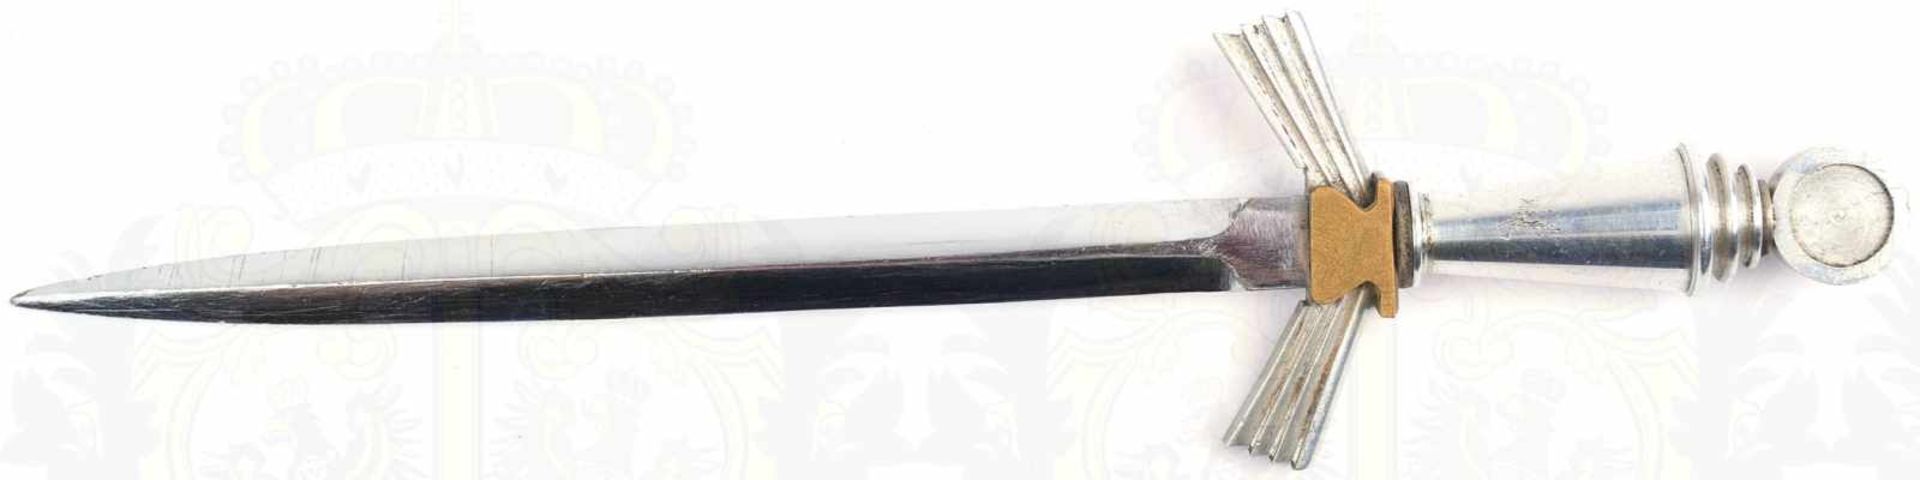 BRIEFÖFFNER, blanke zweischneidige Klinge, L. 14cm, Griffteile Weißmetall/Tombak, vernickelte - Image 3 of 3